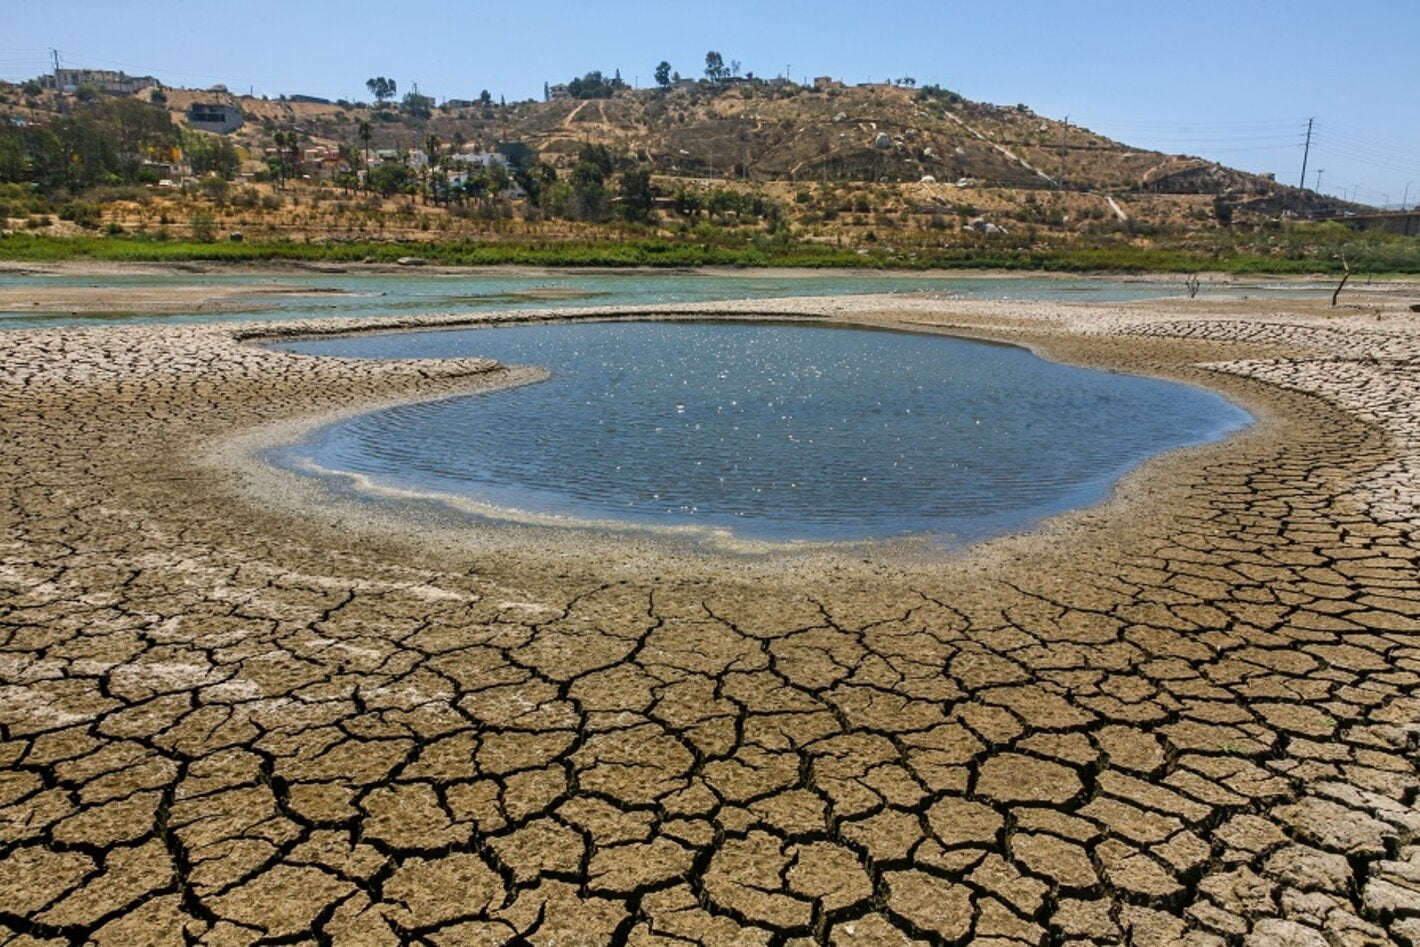 Lago afectado por la sequía en México.